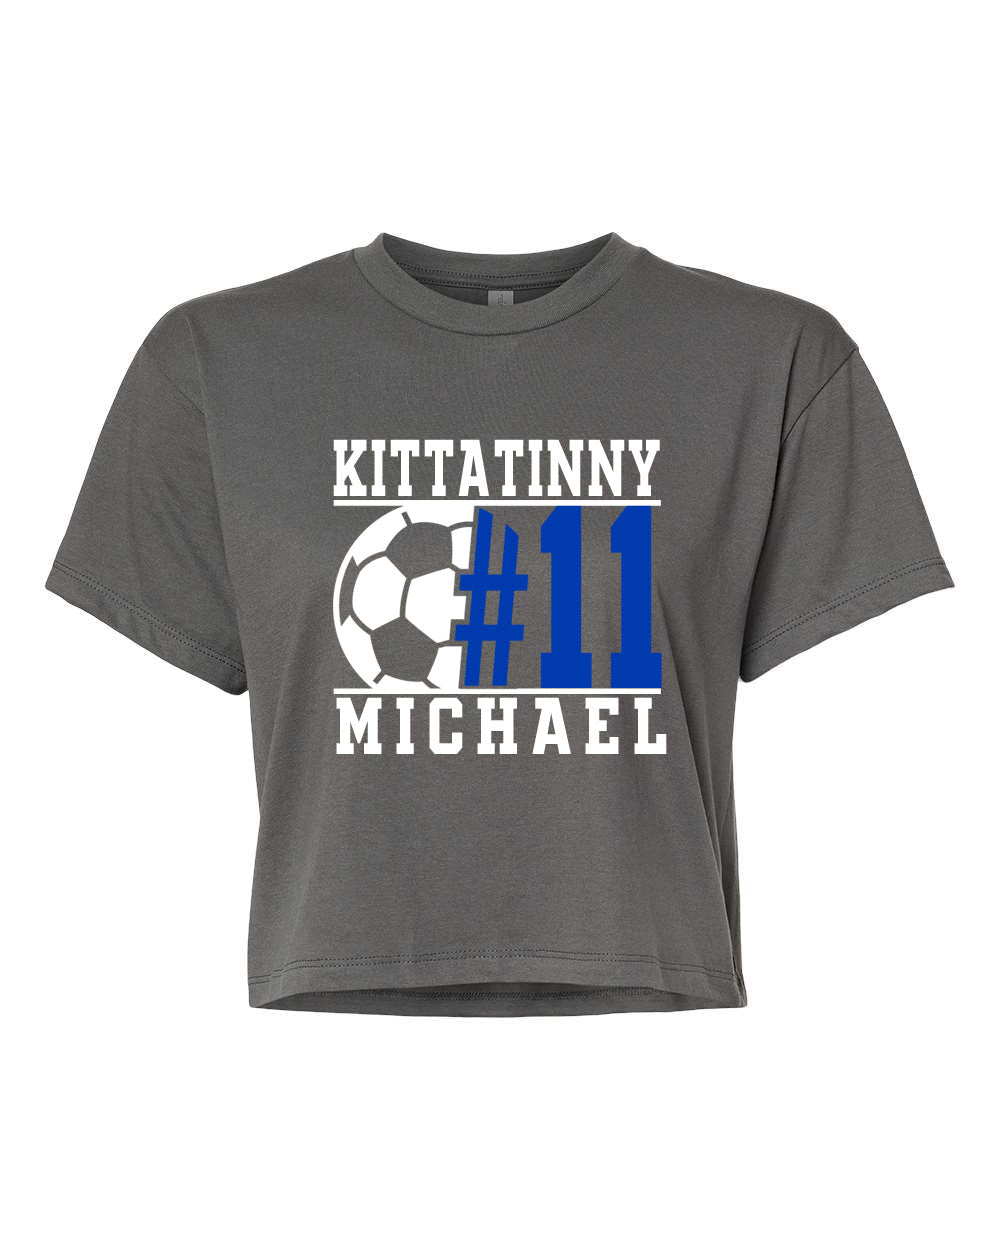 Kittatinny Soccer Design 5 Crop Top